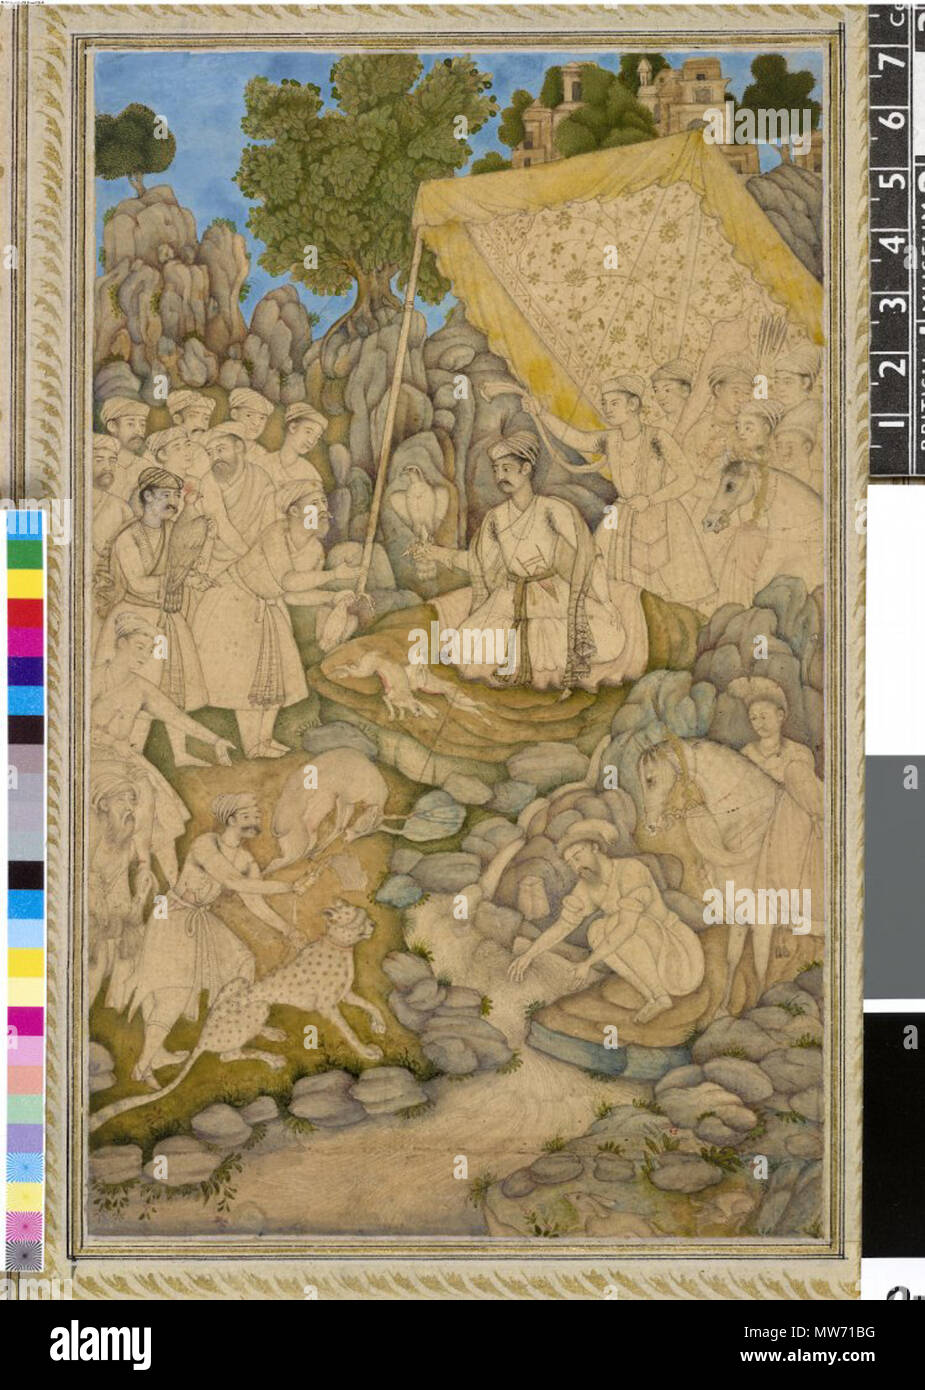 . Englisch: Alexander ruht auf einer Hütte Mughal India, C. 1605 eingeschrieben auf dem Berg: ikandar Shah "Tinte, Gold und Aquarell auf Papier die Kombination von Zeichnung und Malerei in einer Arbeit wurde in Mughal India beliebt im späten 16. und frühen 17. Jahrhunderts. Der Künstler hat die Landschaft gemalt hat aber nur einen Hauch von Farbe auf den menschlichen und tierischen Abbildung unter dem Vordach hinzugefügt. Obwohl er als Alexander der Große gekennzeichnet ist, ist er angekleidet und als Mughal. ca. 1605 bewaffnet. Moghul-stil 21A Prince (gekennzeichnet als Alexander der Große) erhält einen Beutel nach der Jagd beim Sitzen unter dem Vordach mit Falcon auf Wr Stockfoto